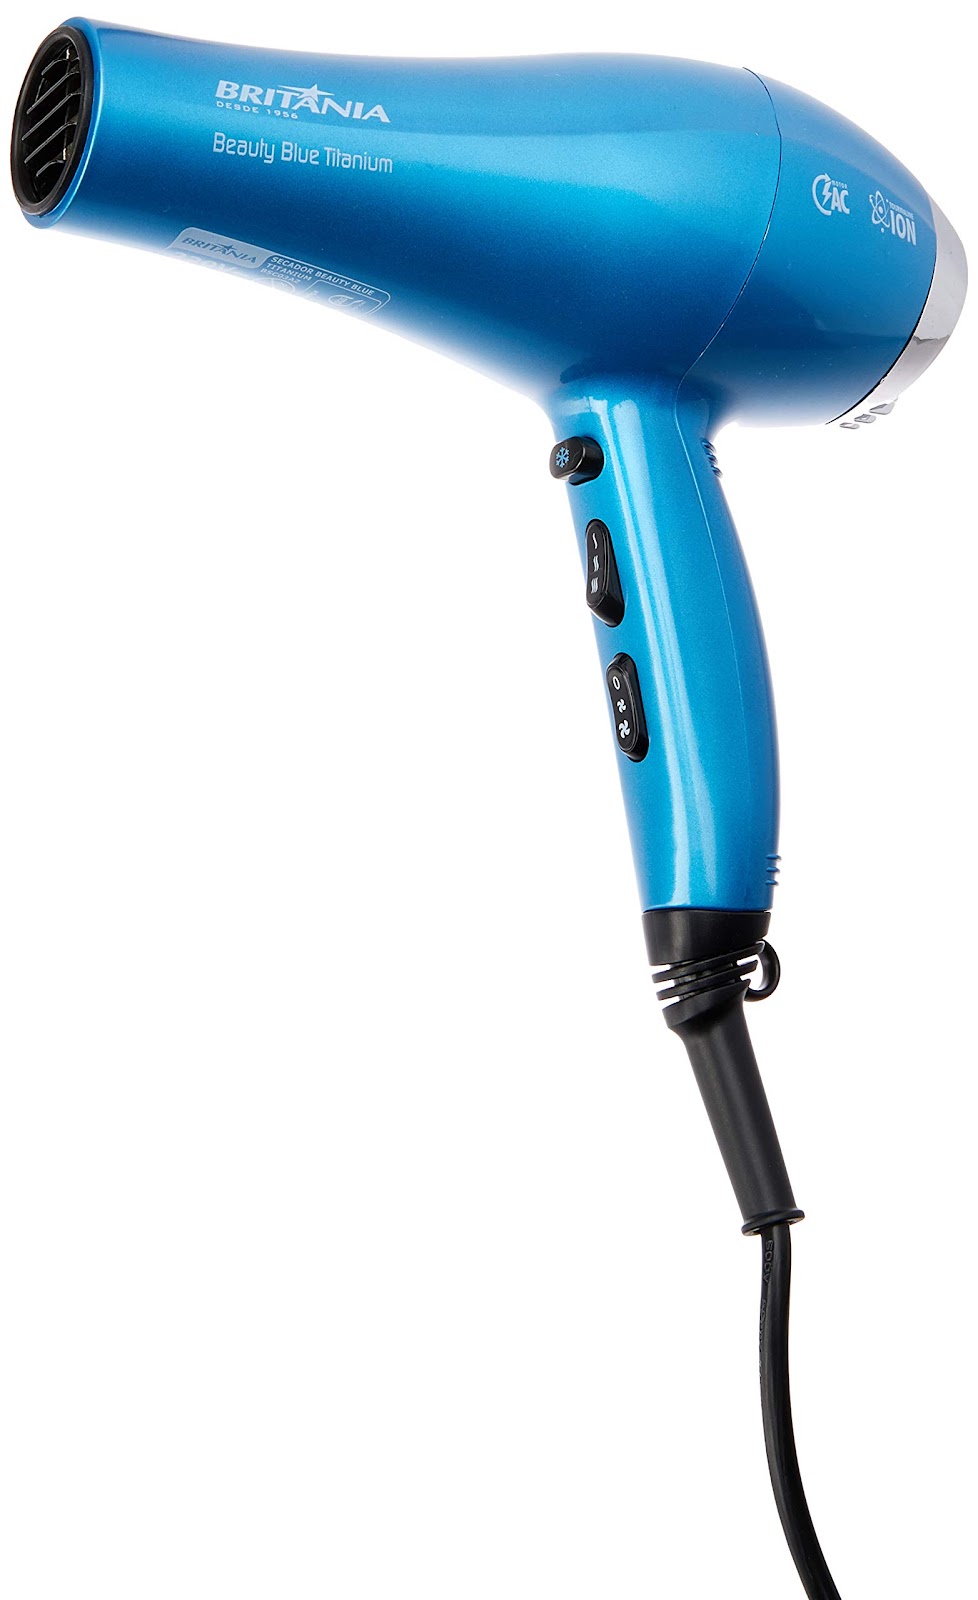 Secador de cabelo, Beauty blue titanium Bsc03az, 2000w, Azul, 220V, Britânia